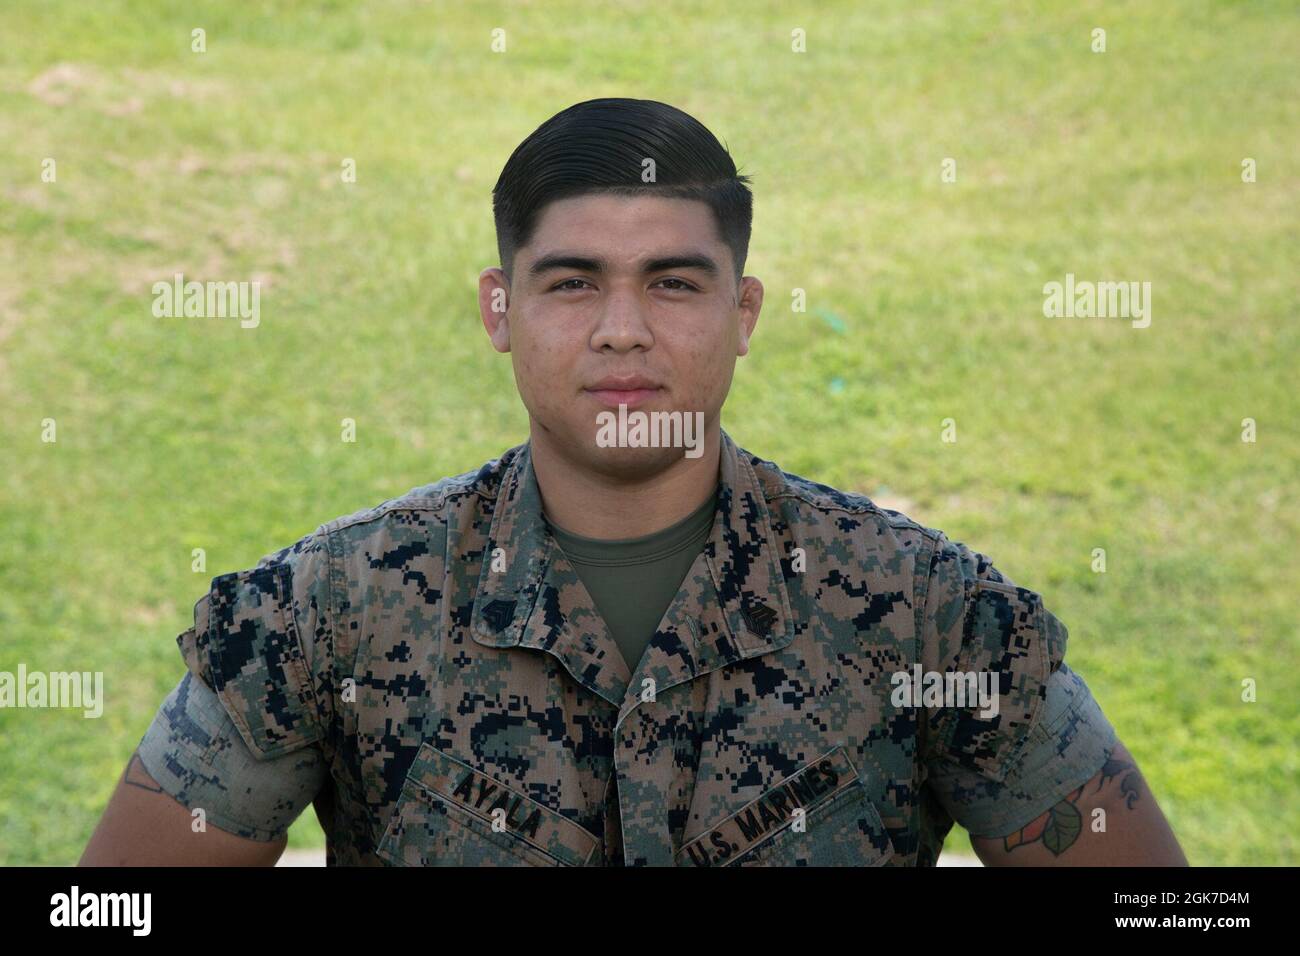 U.S. Marine Corps Sgt. Anthony Ayala, ein Systembetreiber mit der 3. Marine Expeditionary Brigade, posiert für ein Foto auf Camp Courtney, Okinawa, Japan, 24. August 2021. Ayala arbeitet an der Koordination, Konfliktlösung und Bearbeitung von Feuermissionen für 3D-MEB. Stockfoto